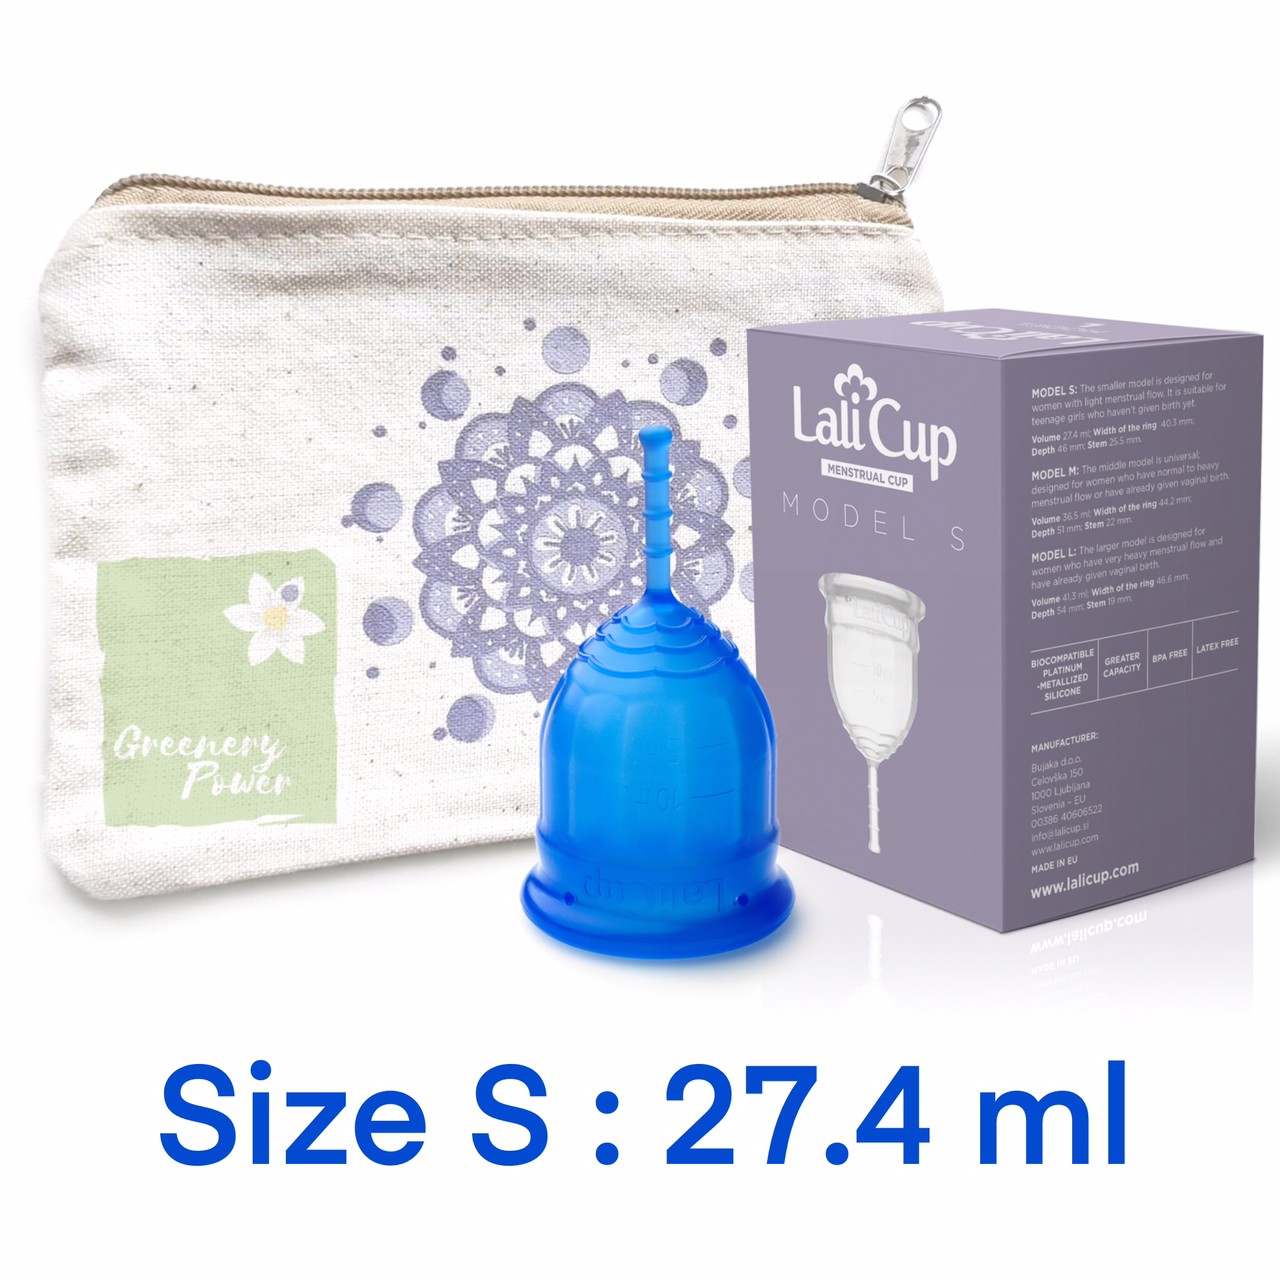 Lalicup Menstrual cup size S สีน้ำเงิน จากประเทศ Slovania มีคู่มือภาษาไทย ถ้วยอนามัย ผ้าอนามัยแบบสอด กรวยอนามัย